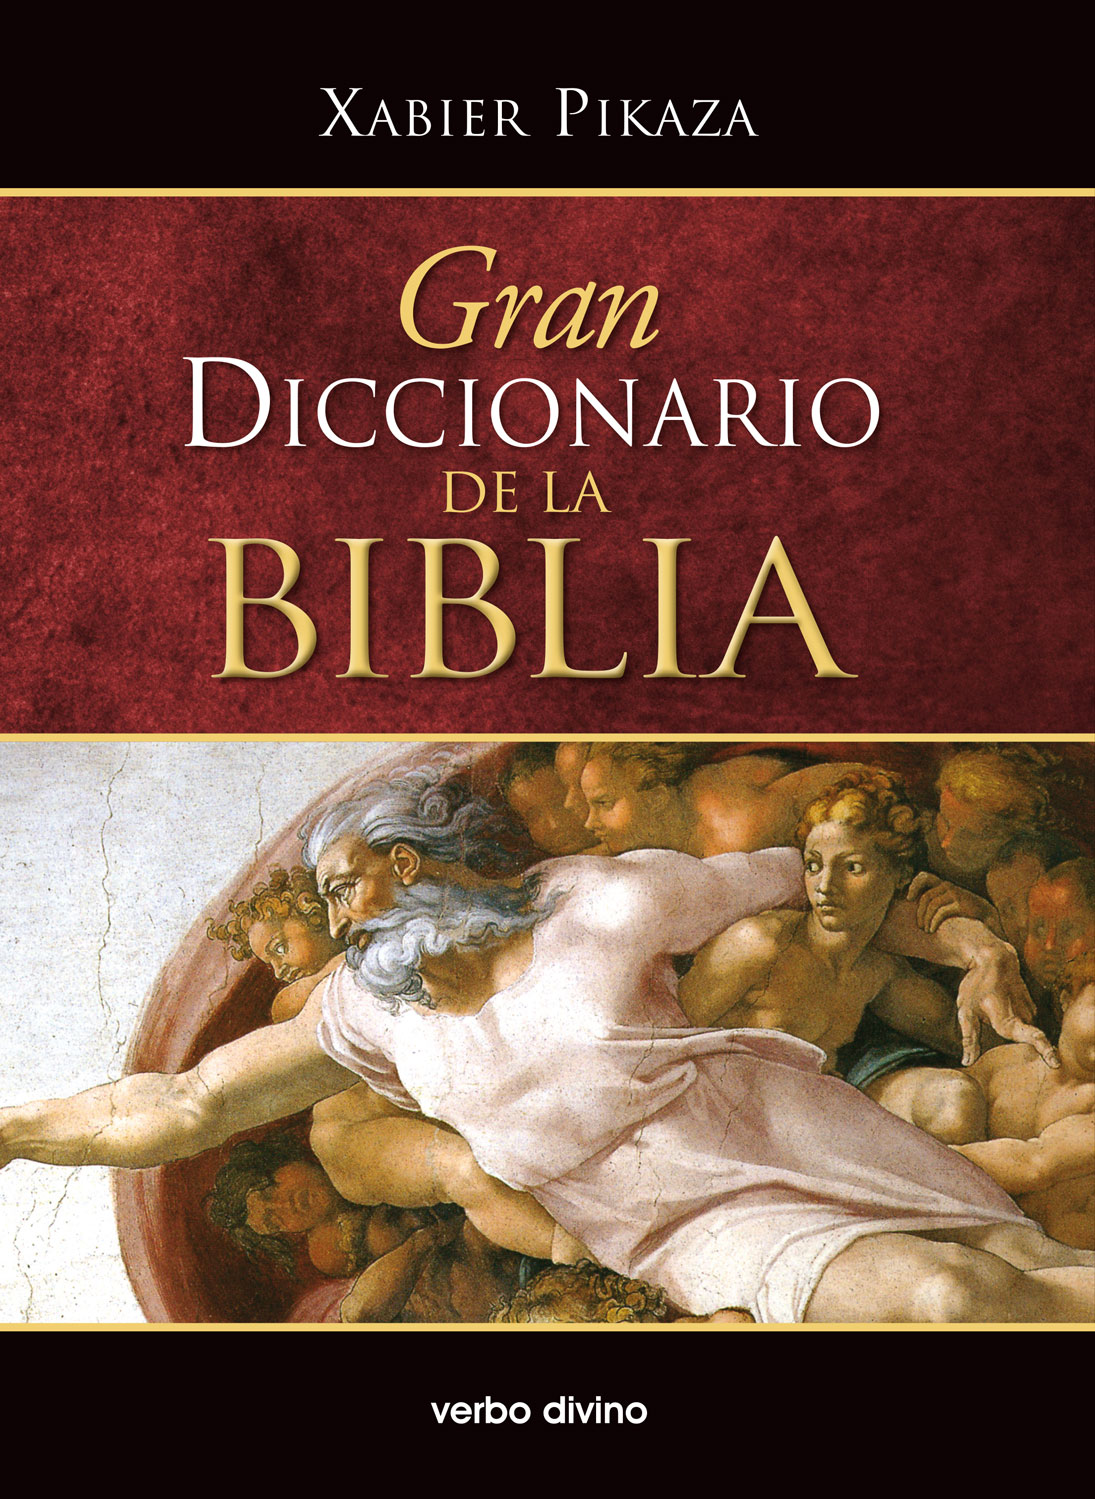 La Biblia - TheWord: Gran diccionario de la Biblia - Xabier Pikaza